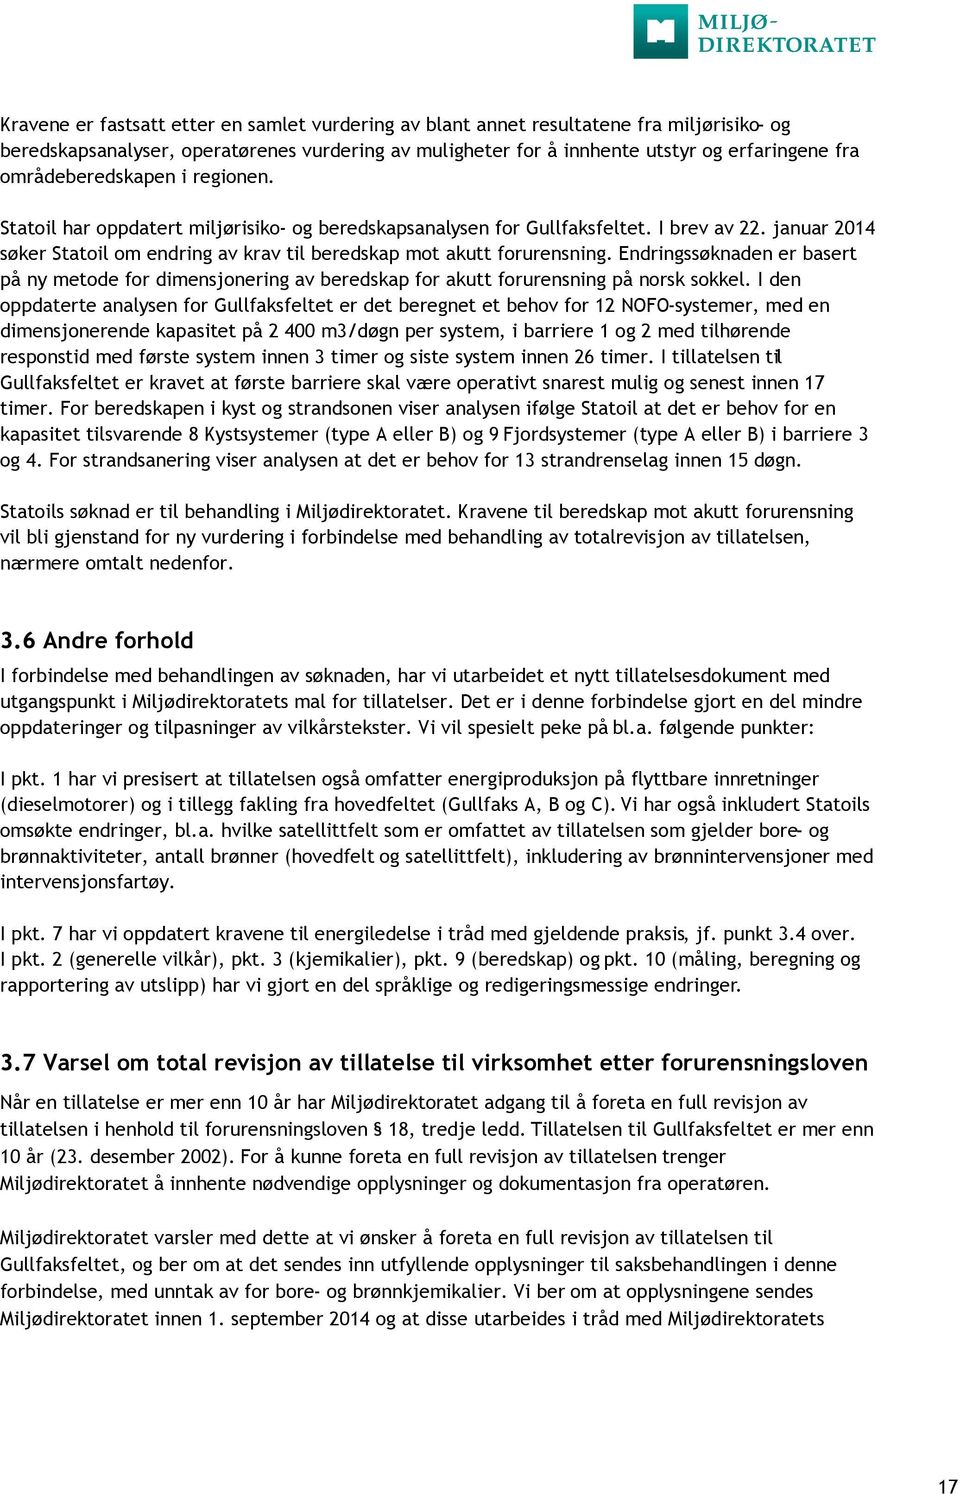 januar 2014 søker Statoil om endring av krav til beredskap mot akutt forurensning. Endringssøknaden er basert på ny metode for dimensjonering av beredskap for akutt forurensning på norsk sokkel.